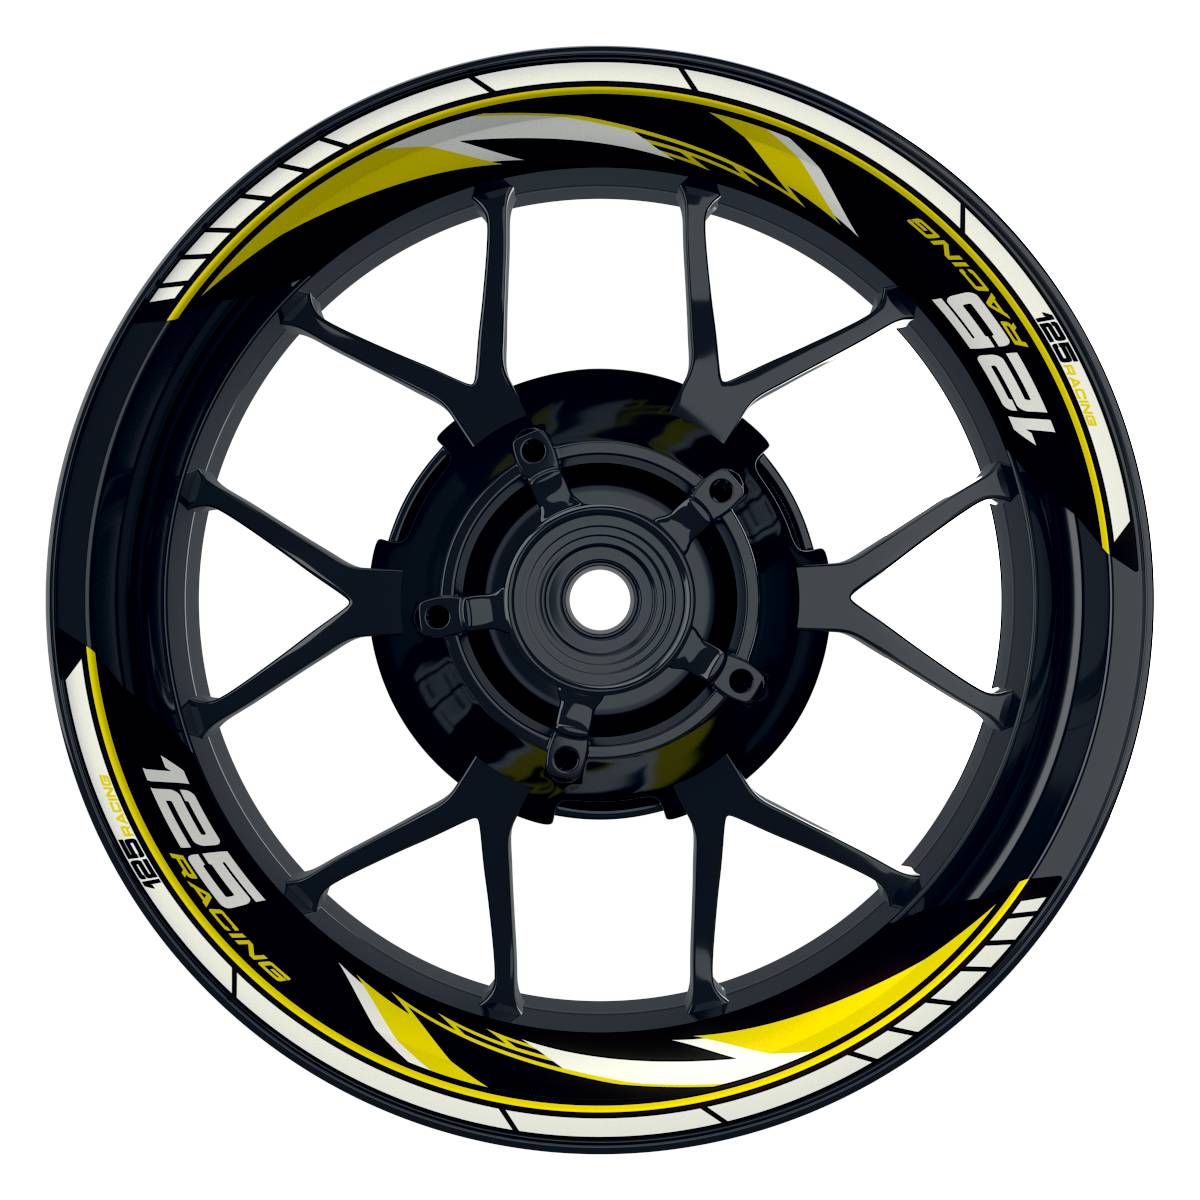 KTM Racing 125 Razor schwarz gelb Frontansicht